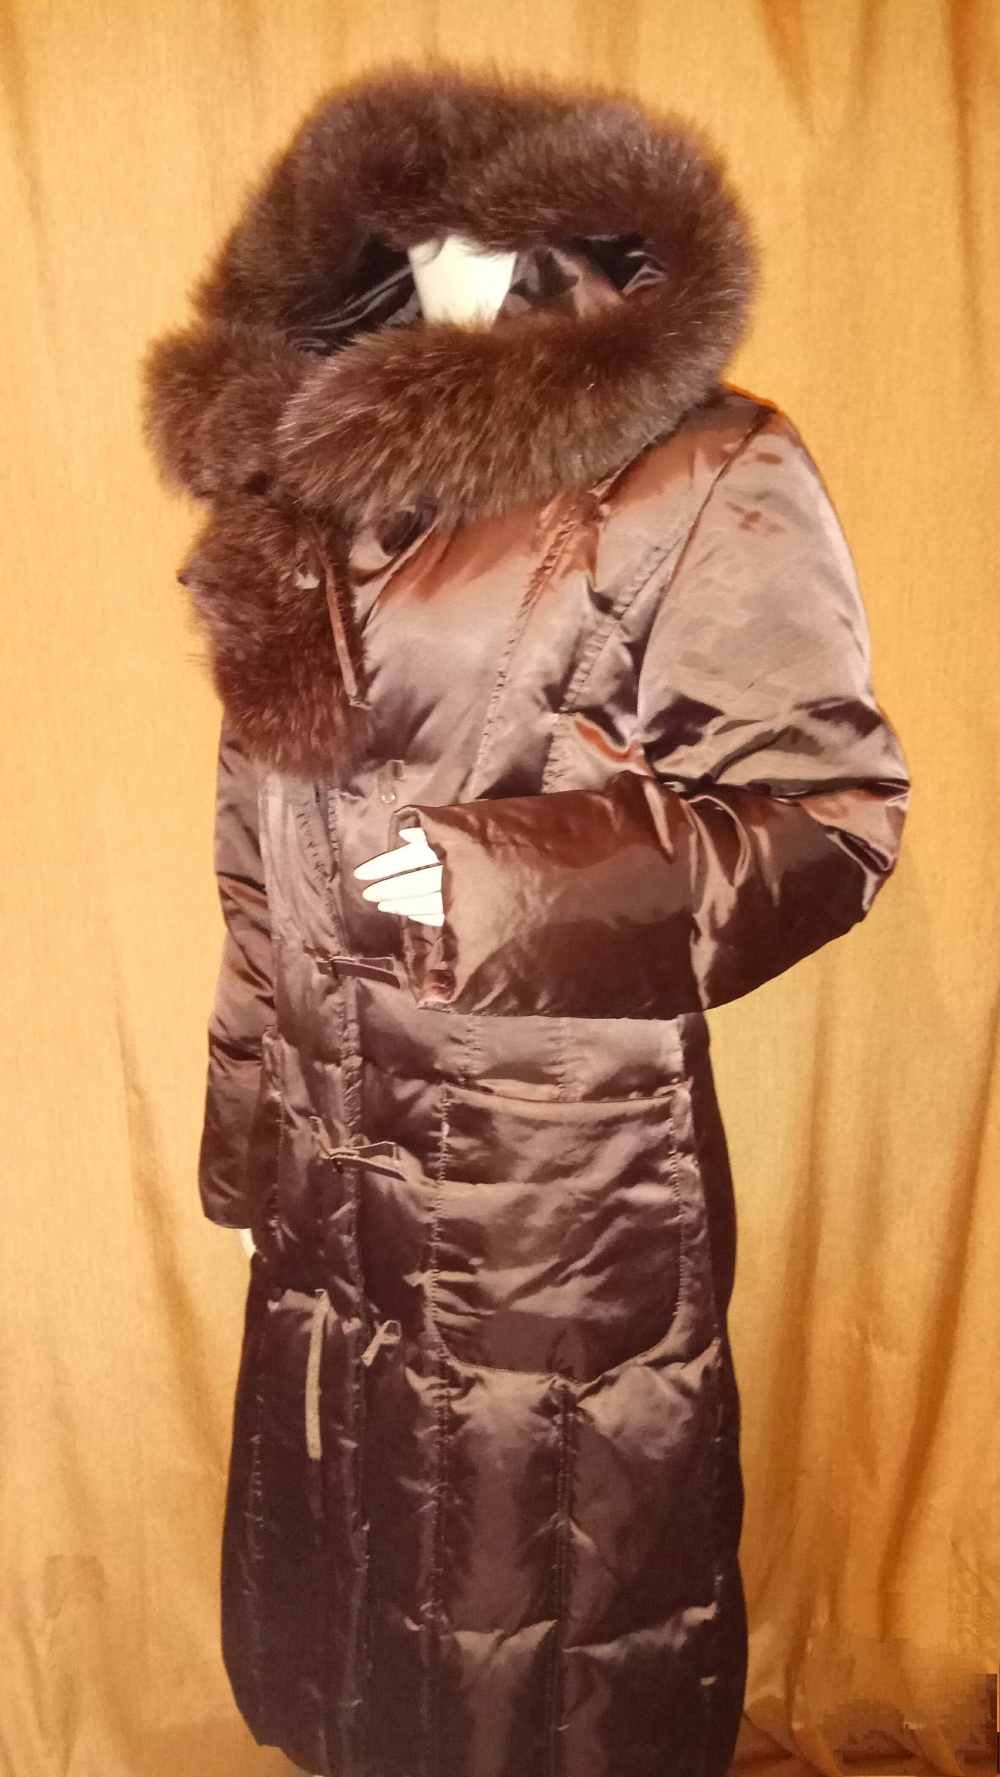 Пальто пуховик Fantastique caprice 48/50 размер